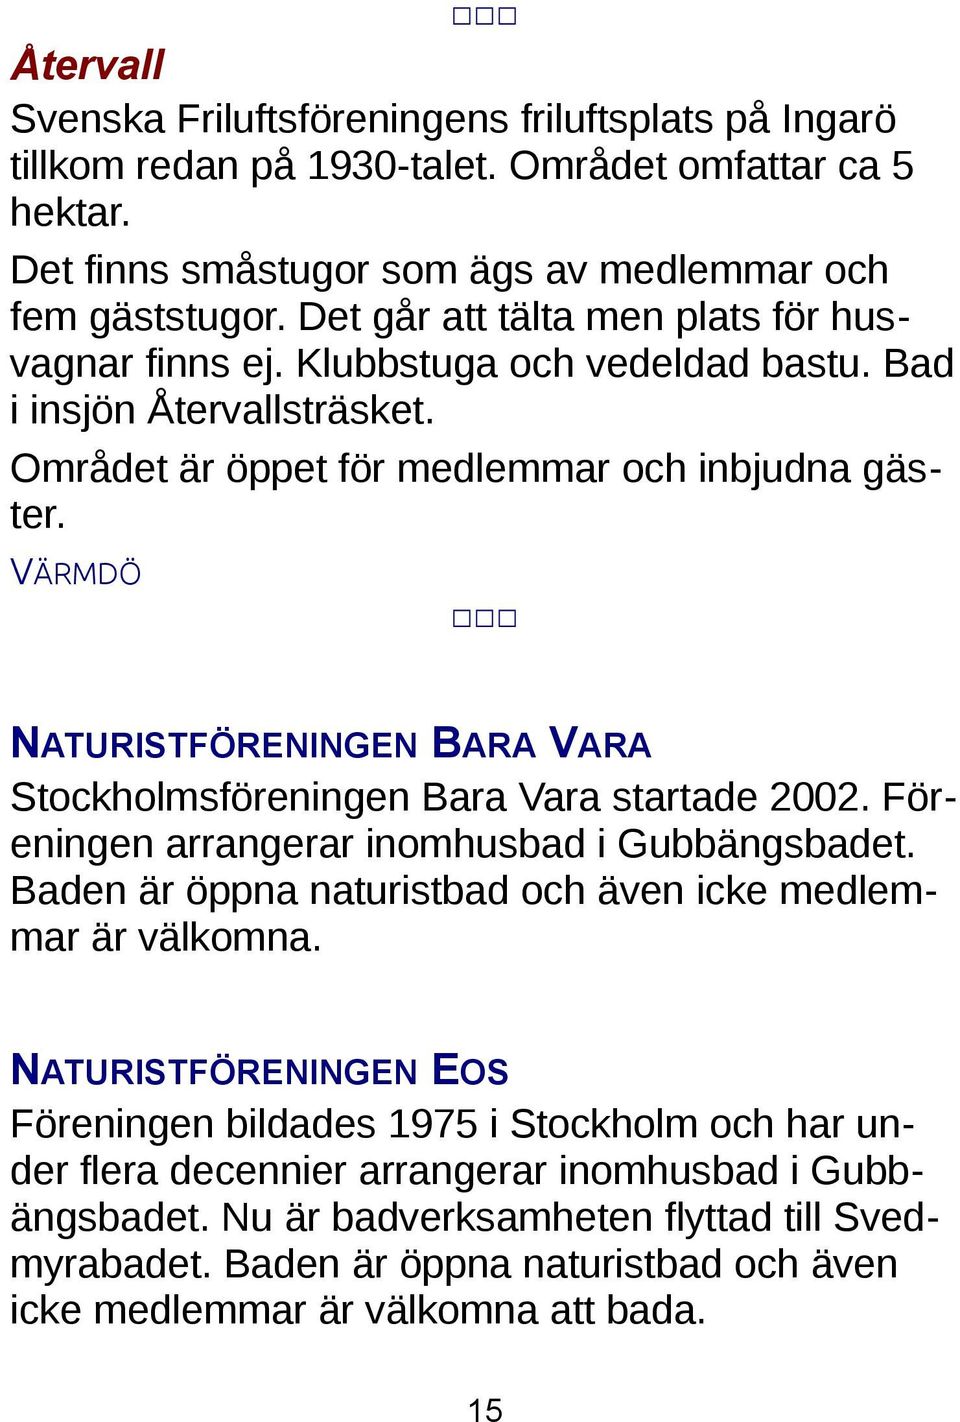 VÄRMDÖ NATURISTFÖRENINGEN BARA VARA Stockholmsföreningen Bara Vara startade 2002. Föreningen arrangerar inomhusbad i Gubbängsbadet. Baden är öppna naturistbad och även icke medlemmar är välkomna.